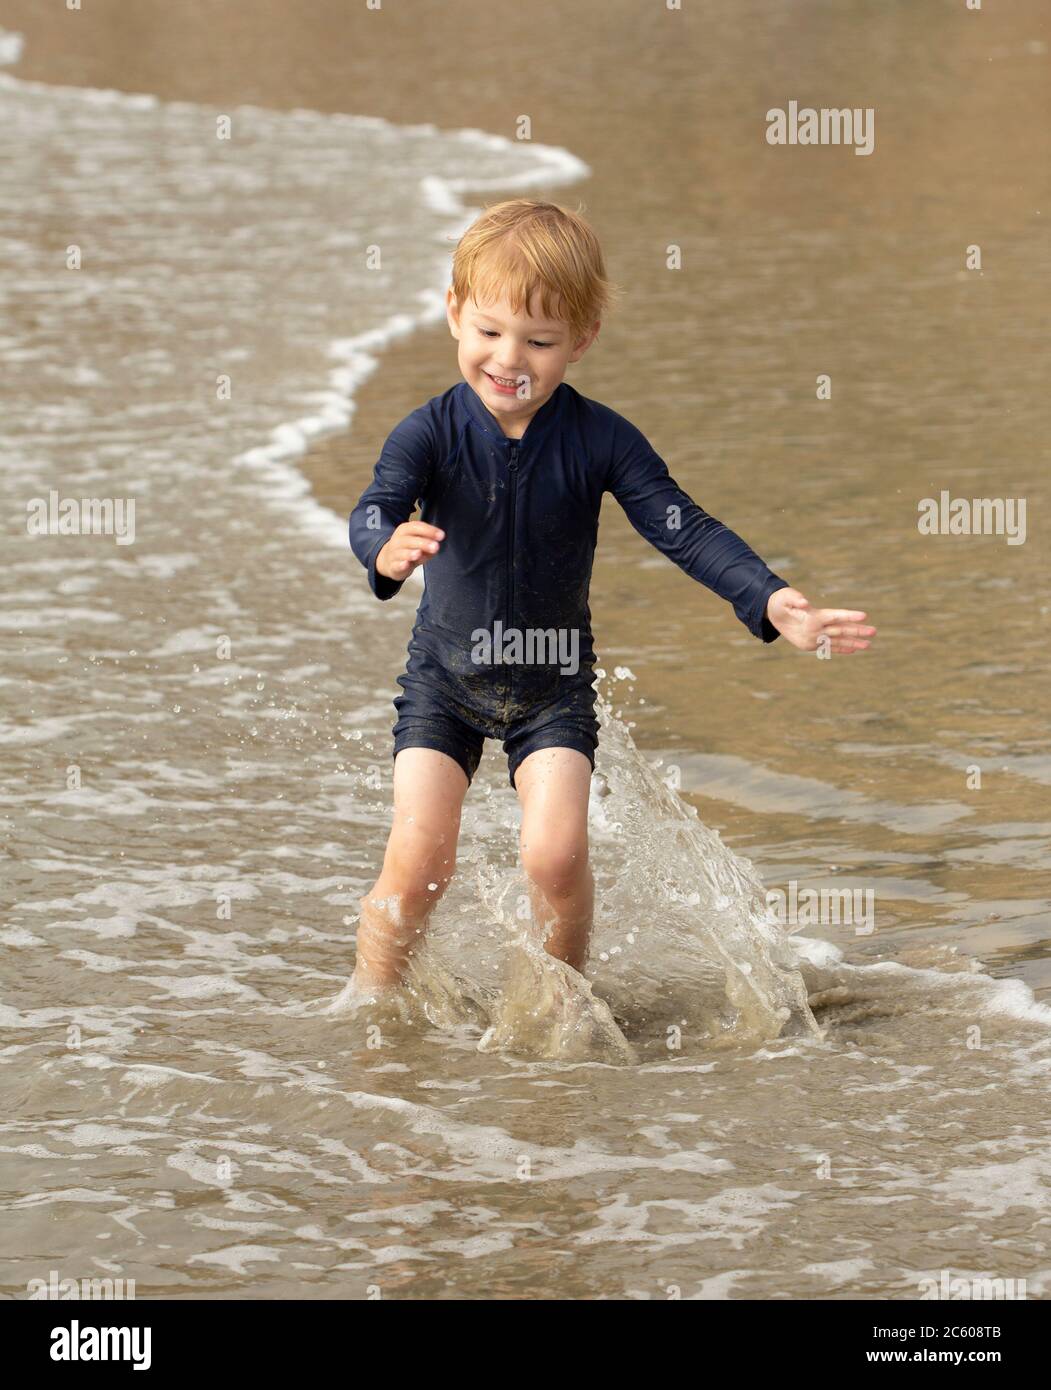 Jeune garçon d'âge préscolaire qui court et joue sur une plage de sable Banque D'Images